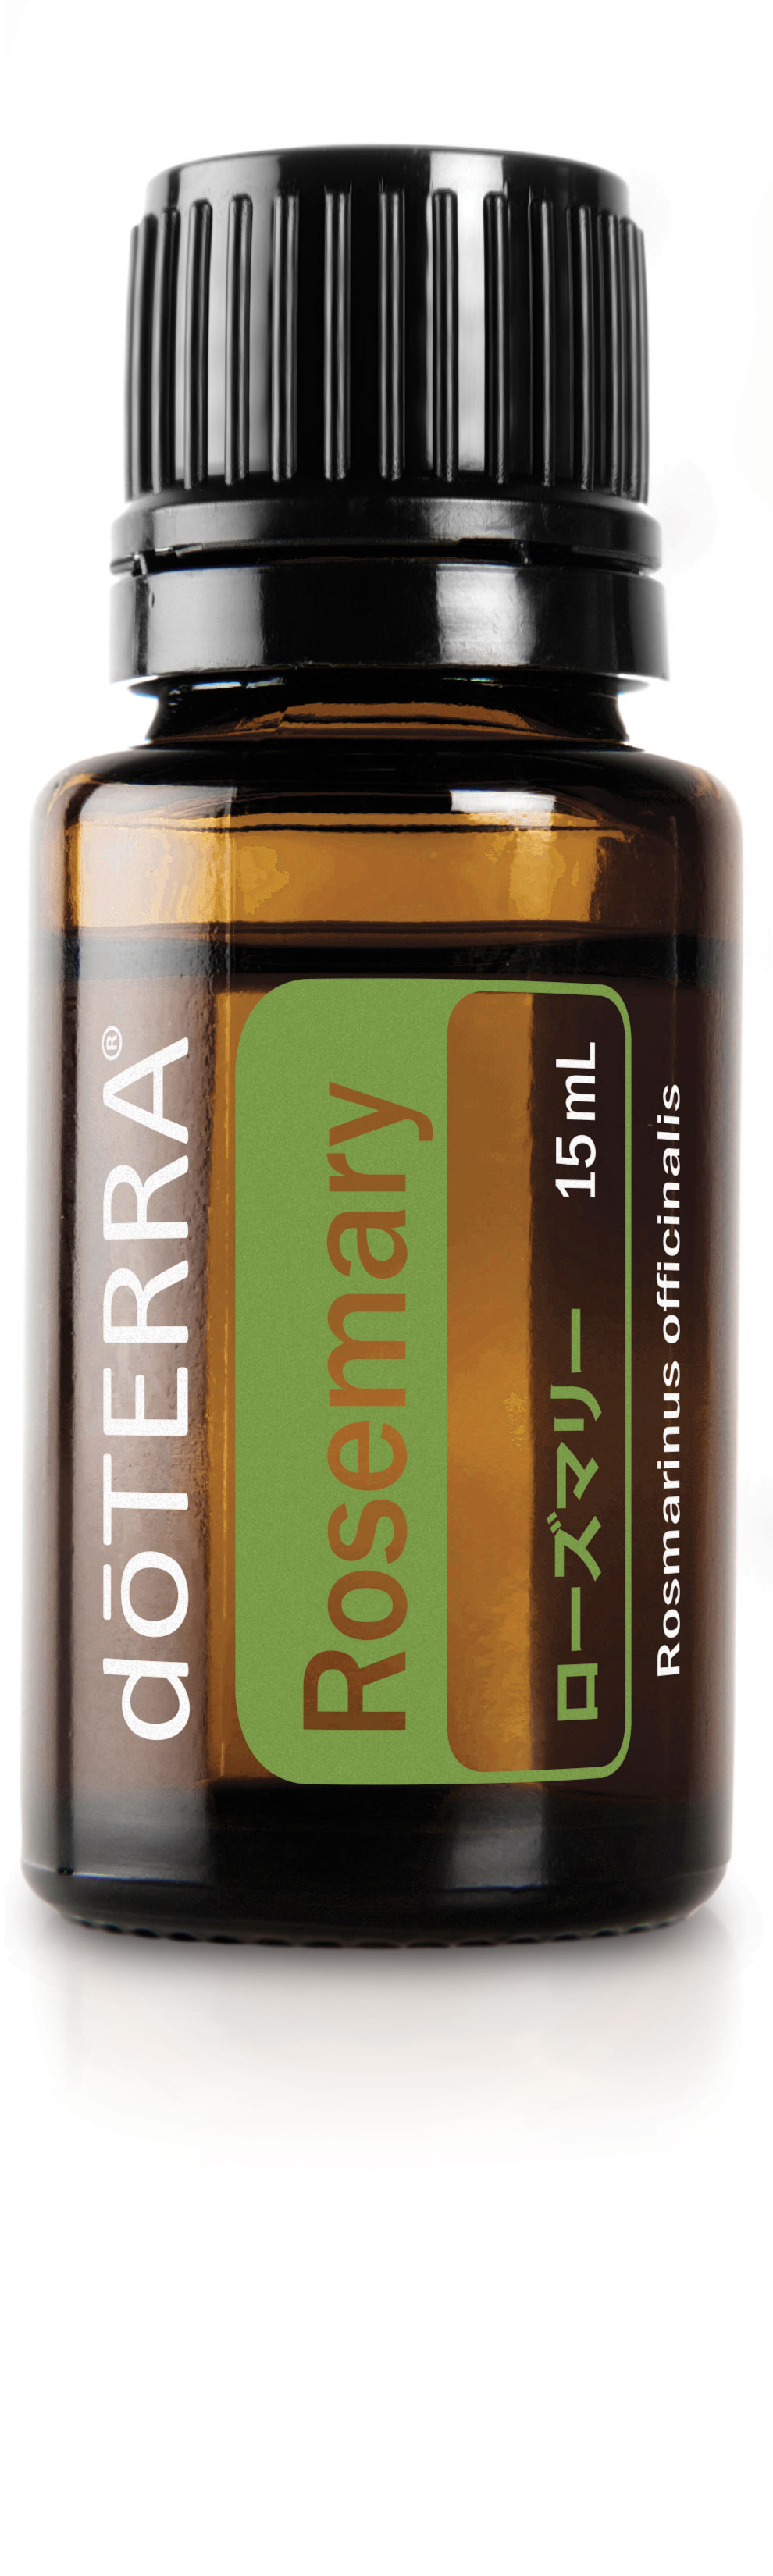 ローズマリー | doTERRA エッセンシャルオイル | doTERRA Essential Oils